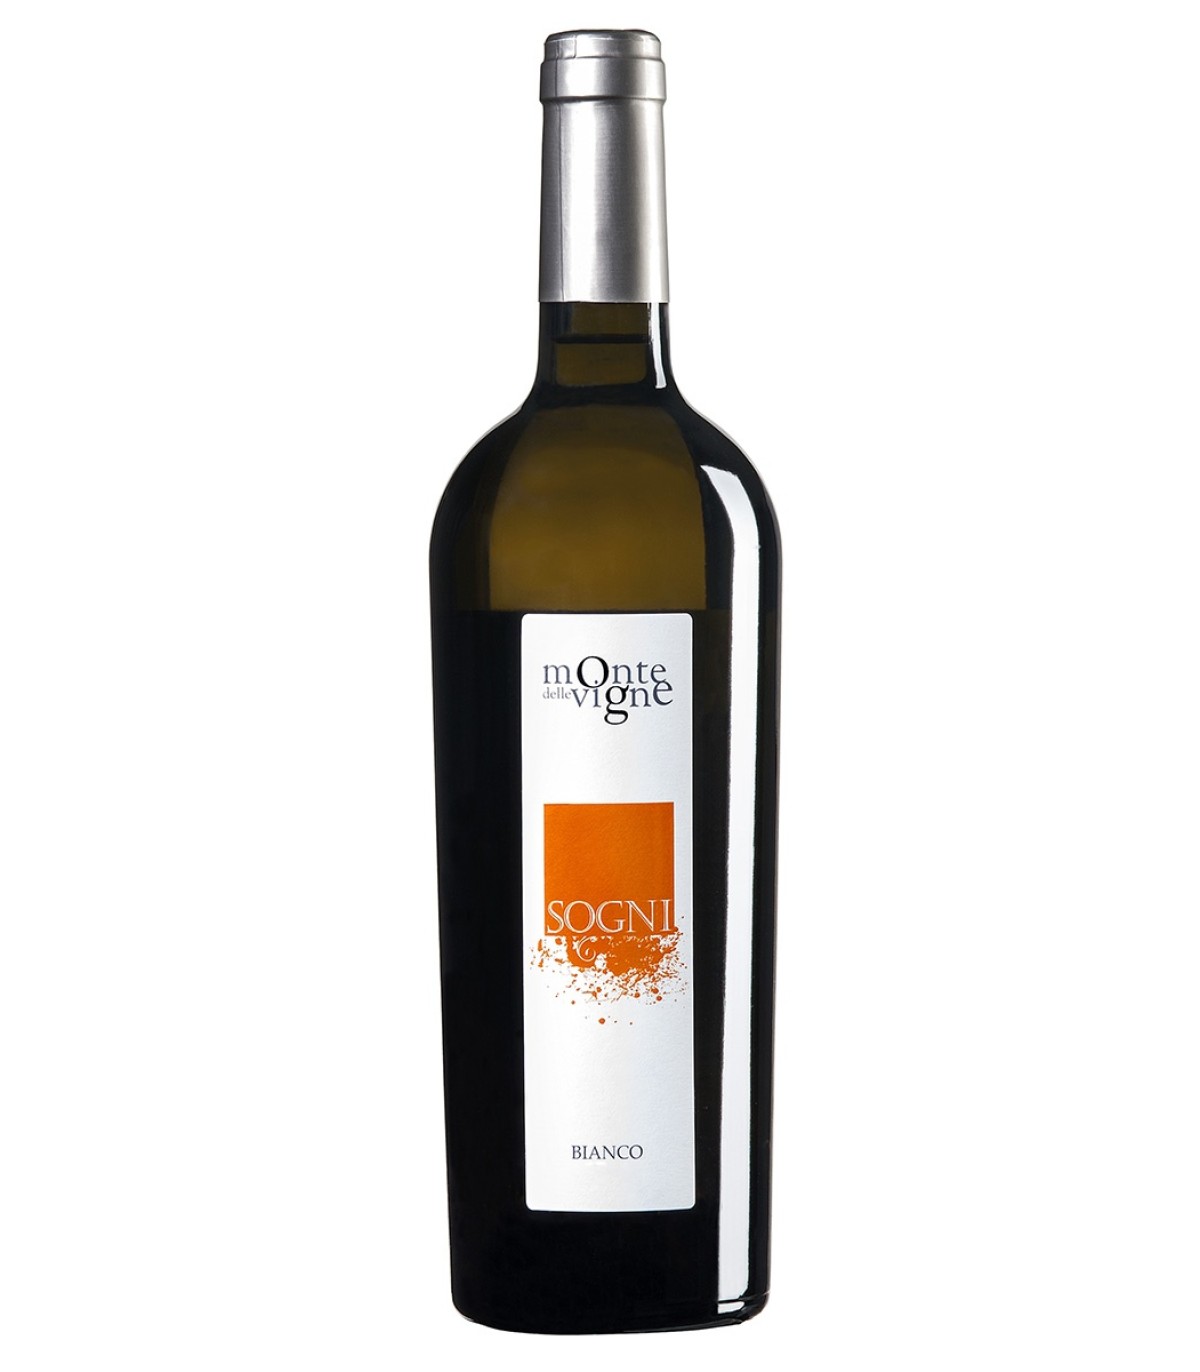 Sogni vino bianco IGT 2015 - Monte delle Vigne